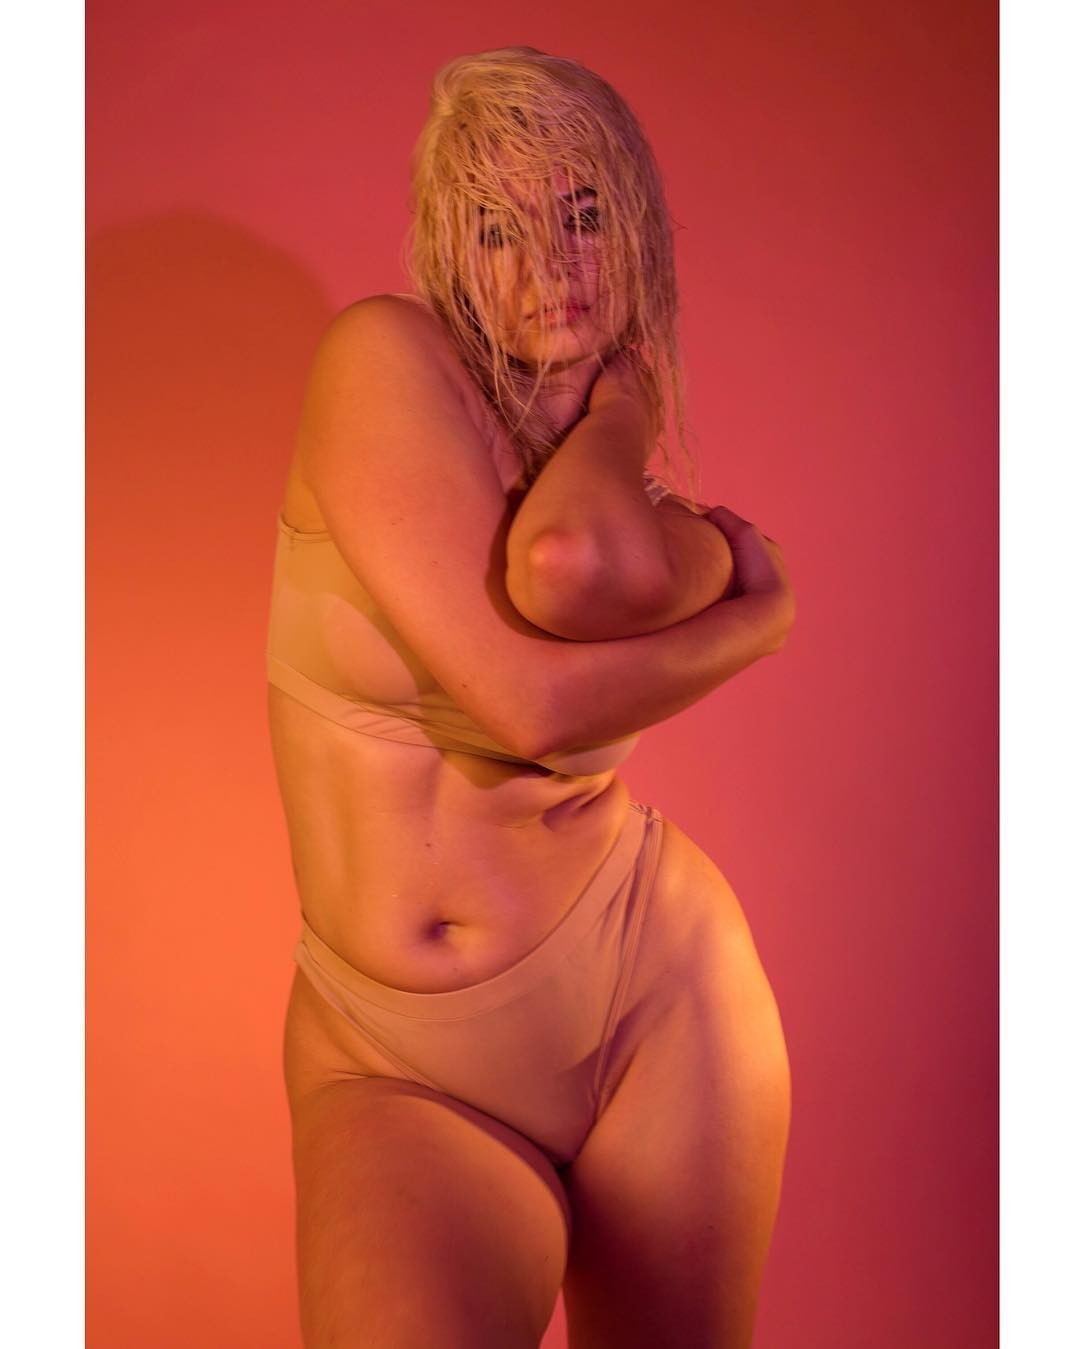 Khrystyana Kazakova Hot In Lingerie TheFappeningPro 4 - Khrystyana Kazakova Nude And Sexy (159 Photos And Videos)